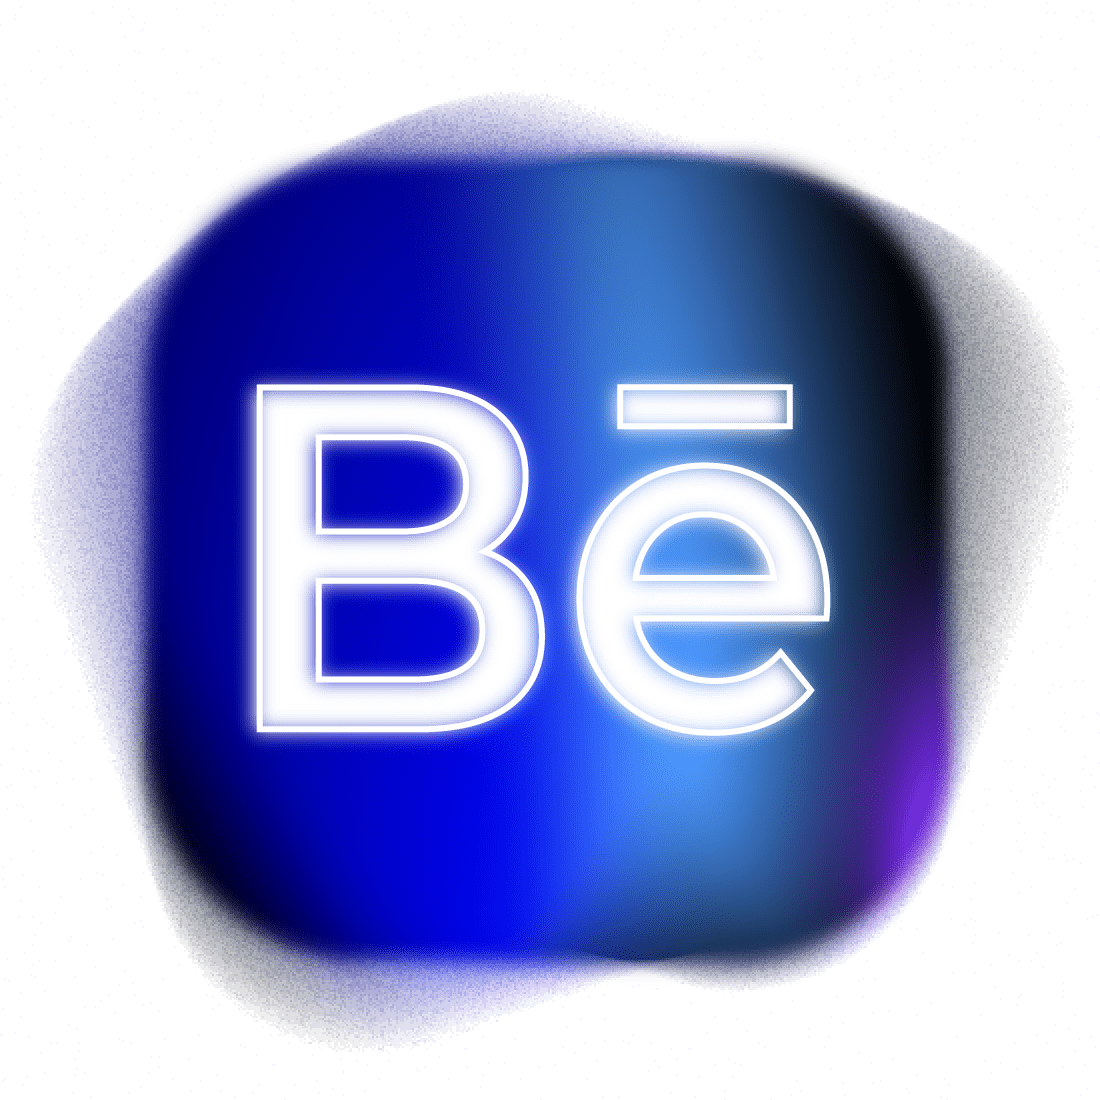 Behance logo designed by DANSU